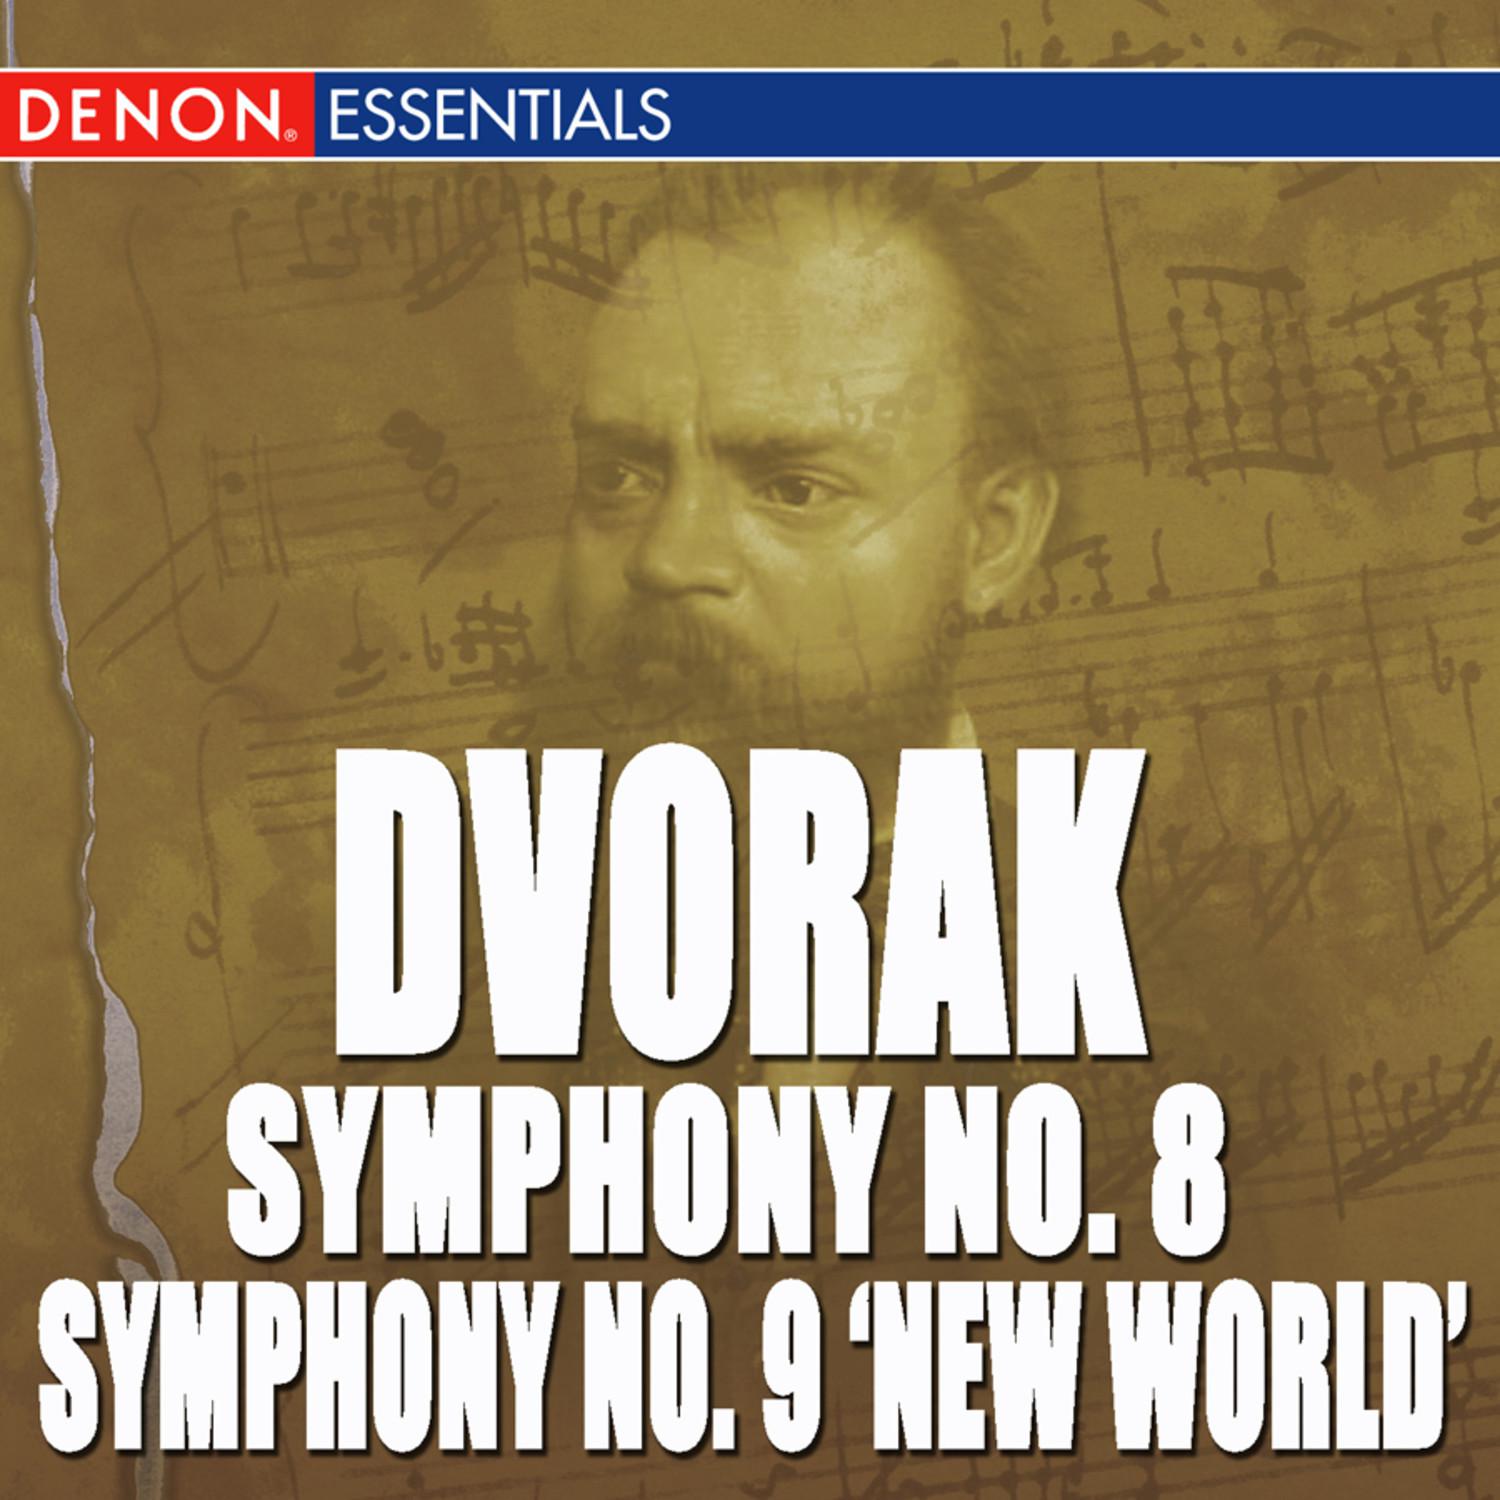 Symphony No. 9 in E Minor, Op. 95 "From the New World": III. Scherzo: Molto vivace - Poco sostenuto